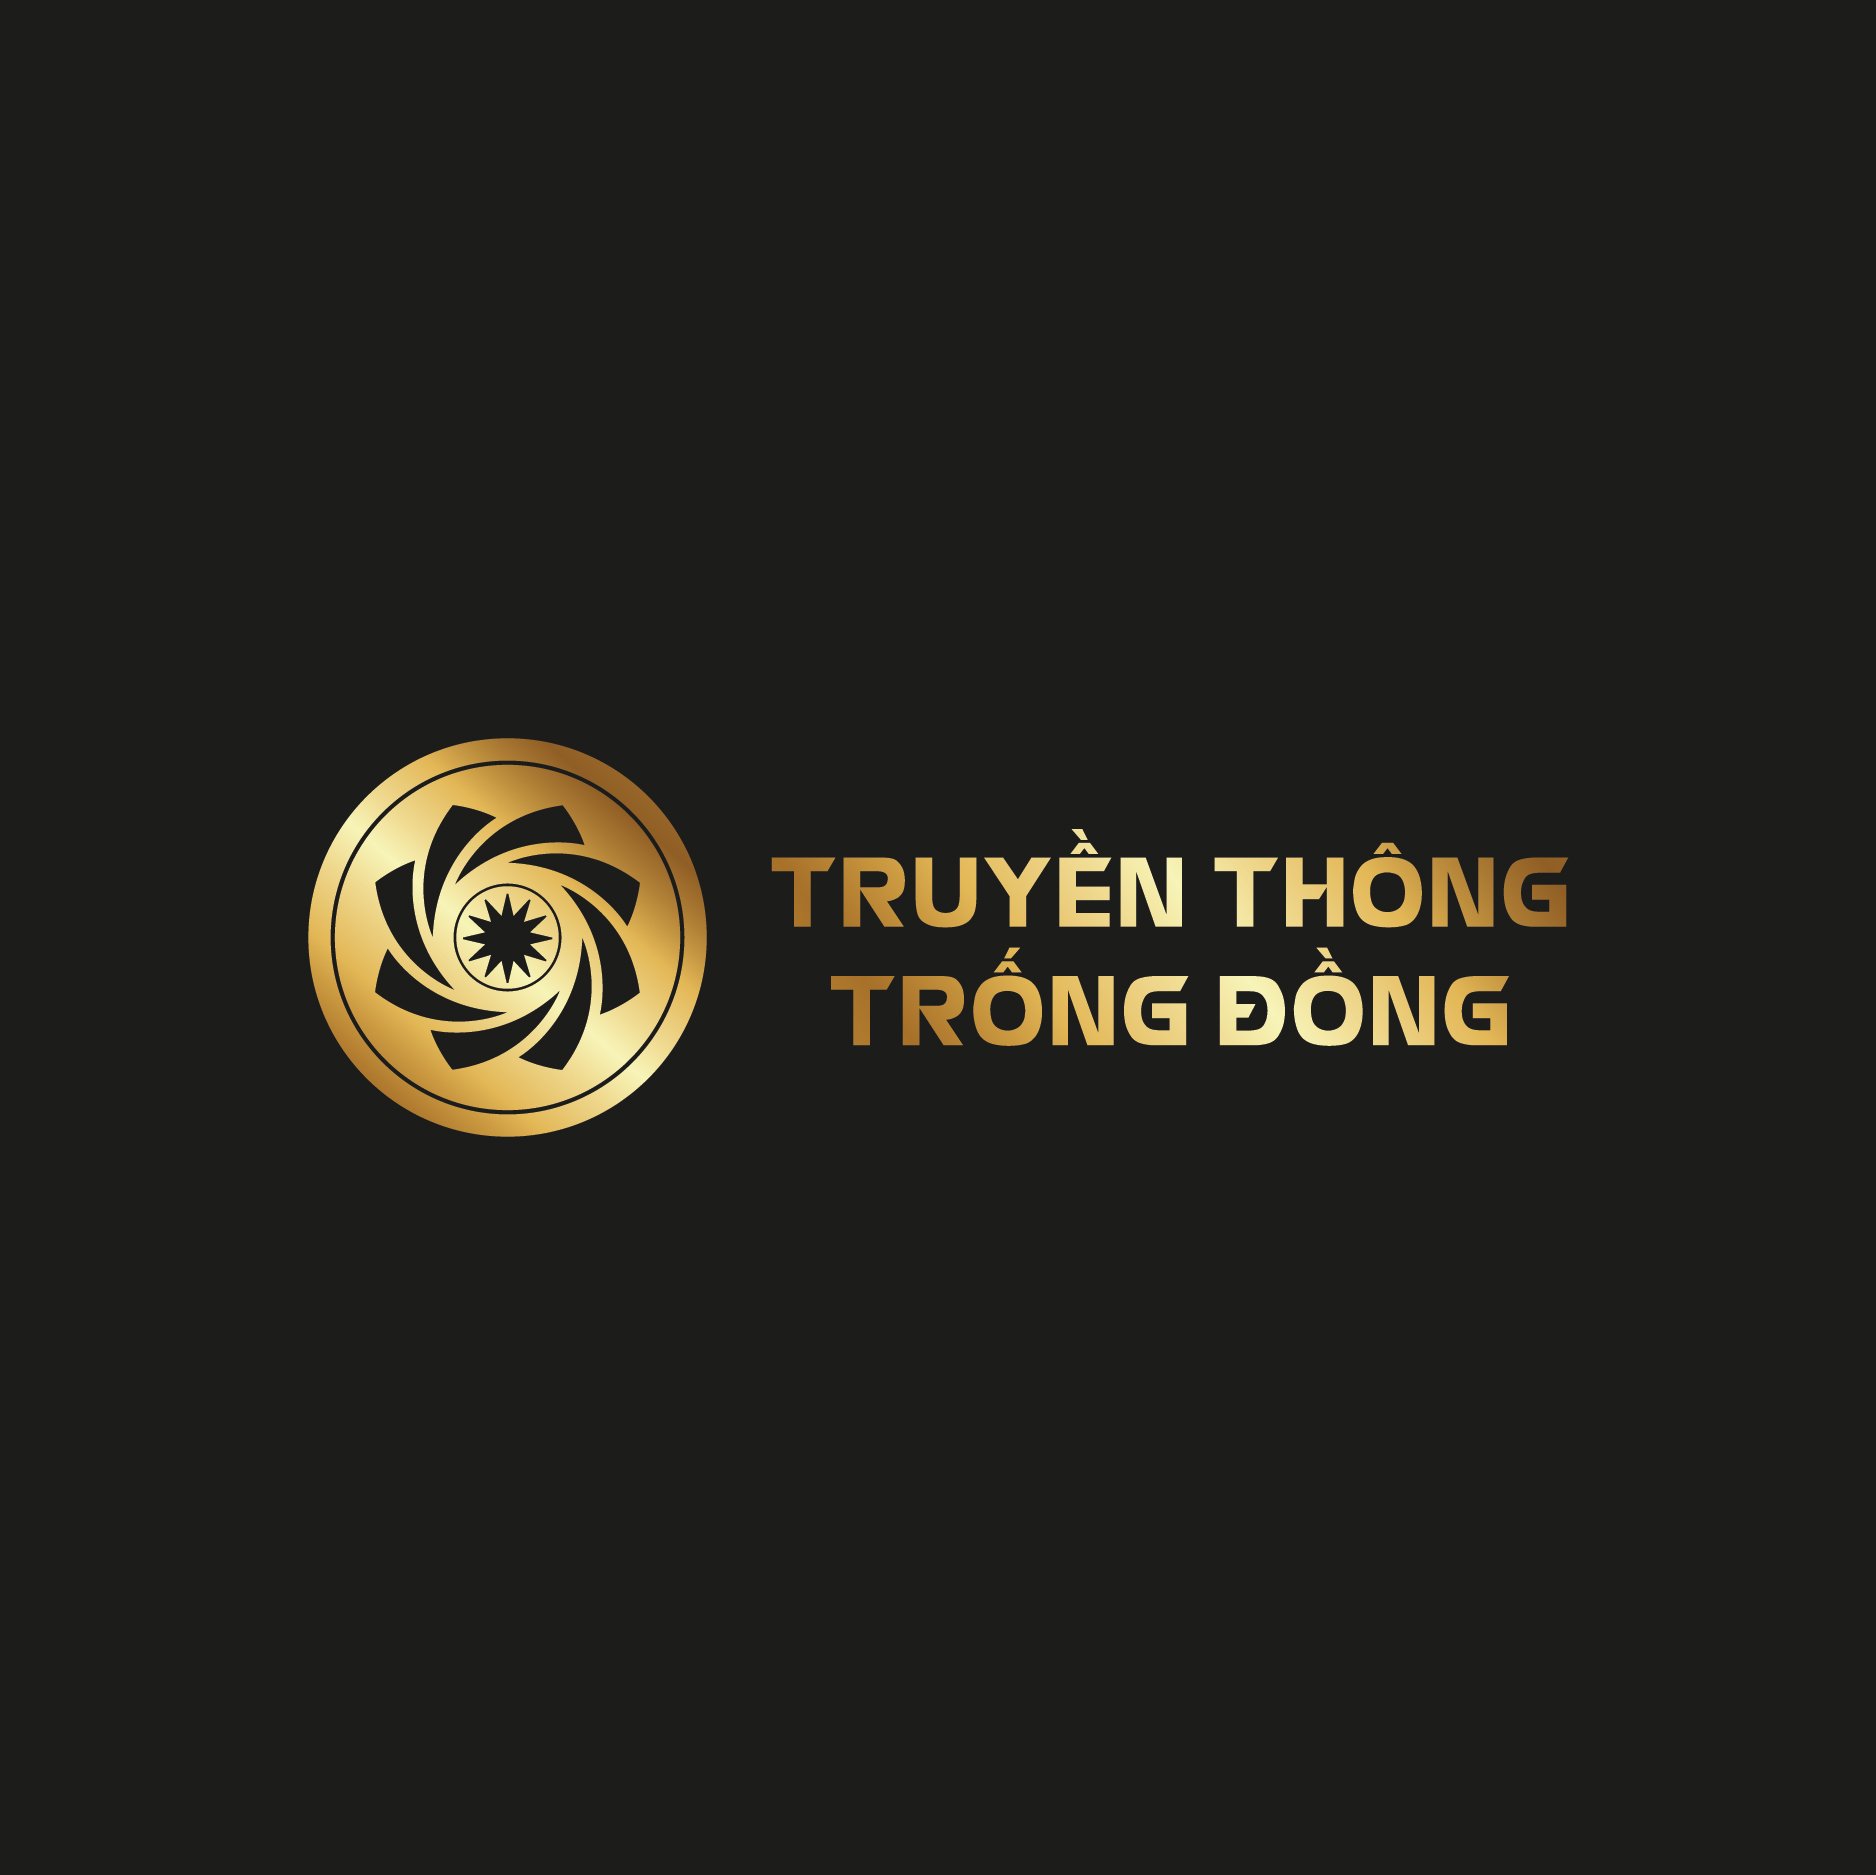 Logo truyền thông Trống Đồng Tây Nguyên